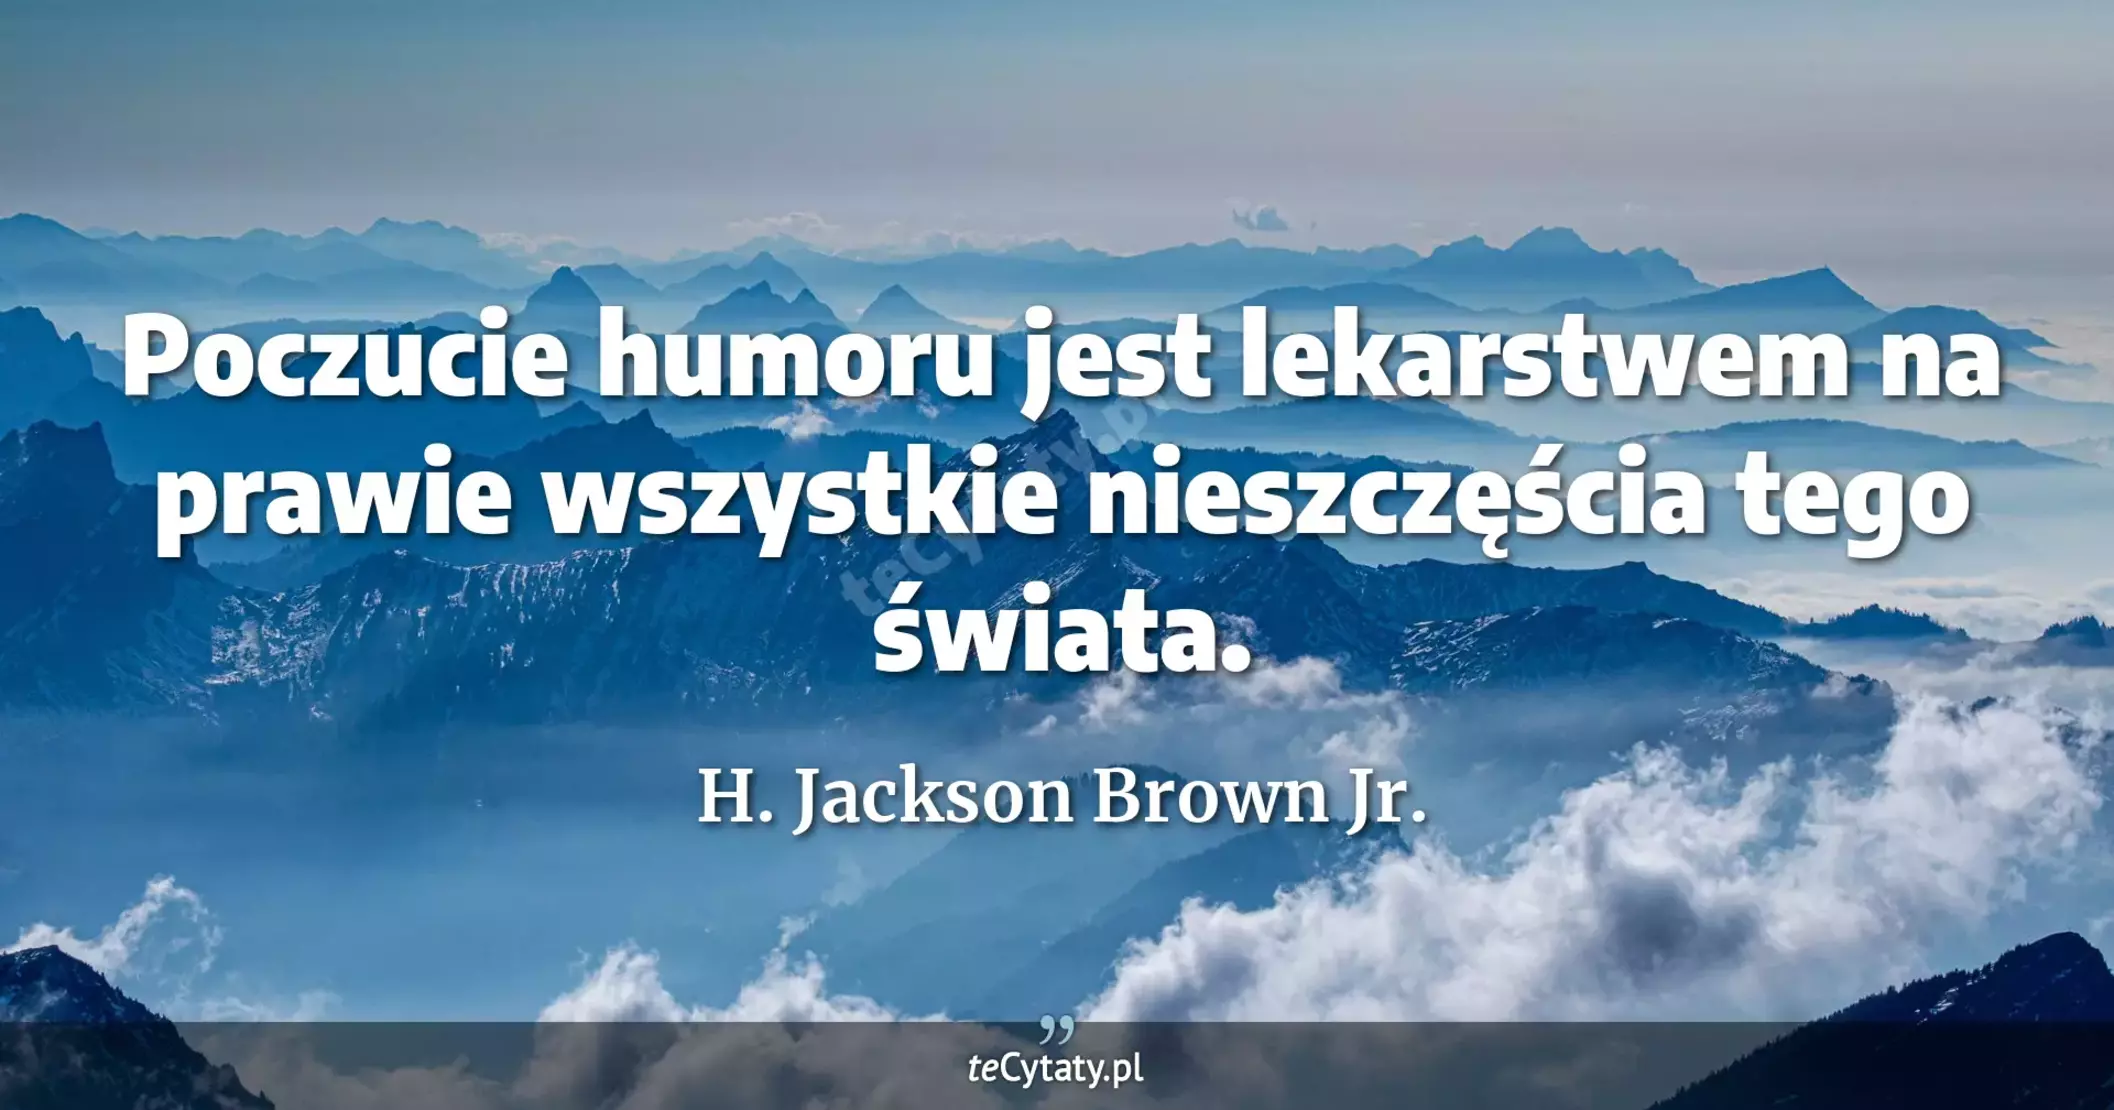 Poczucie humoru jest lekarstwem na prawie wszystkie nieszczęścia tego świata. - H. Jackson Brown Jr.